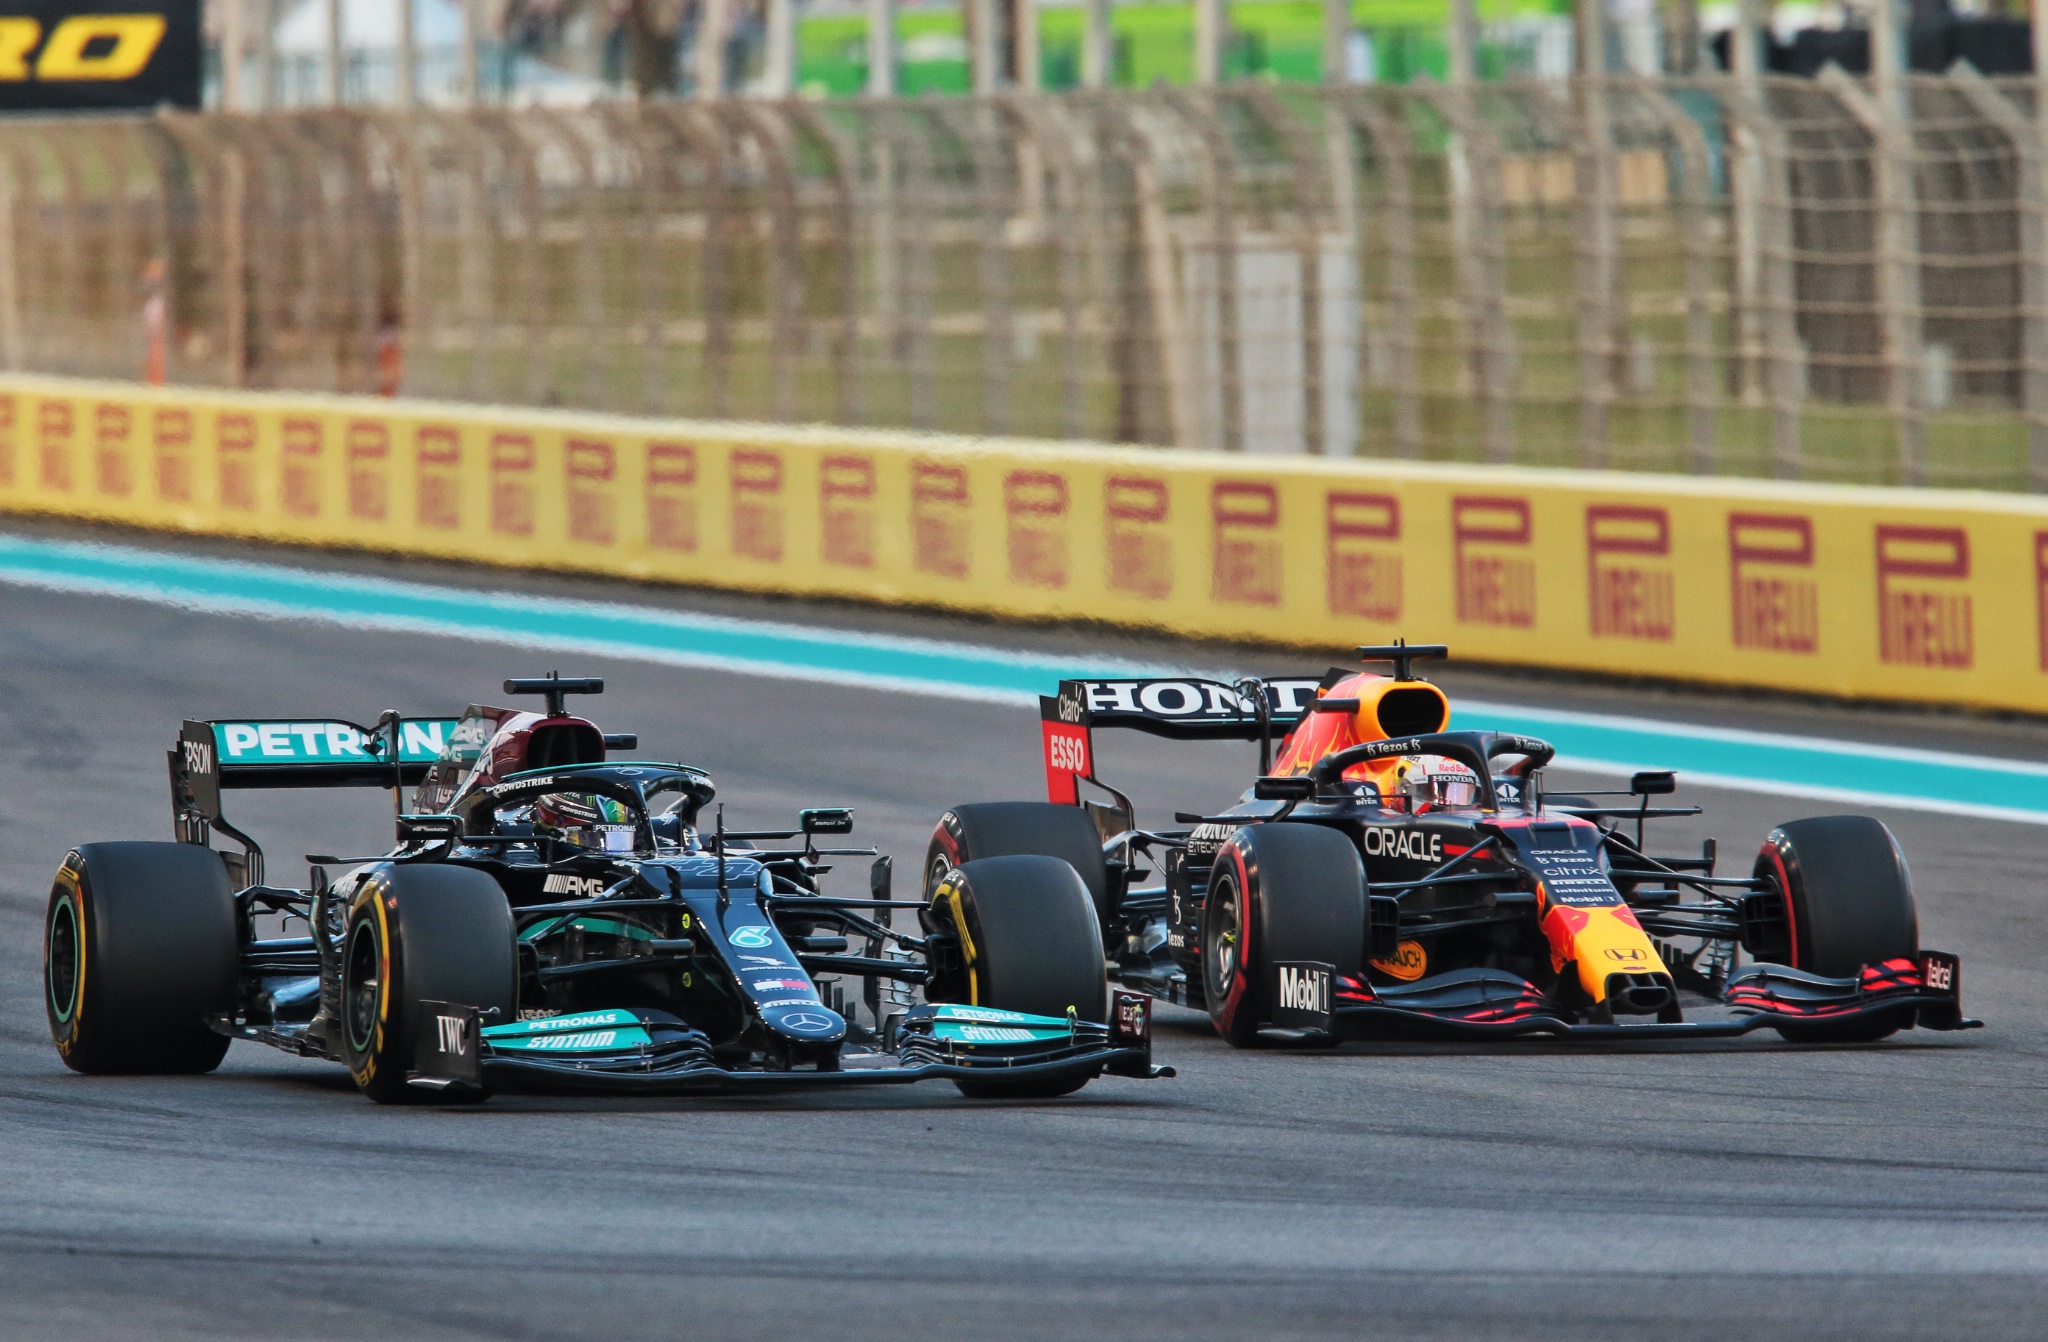 Lewis Hamilton (GBR) Mercedes AMG F1 W12 dan Max Verstappen (NLD) Red Bull Racing RB16B bertarung untuk memimpin di awal balapan.